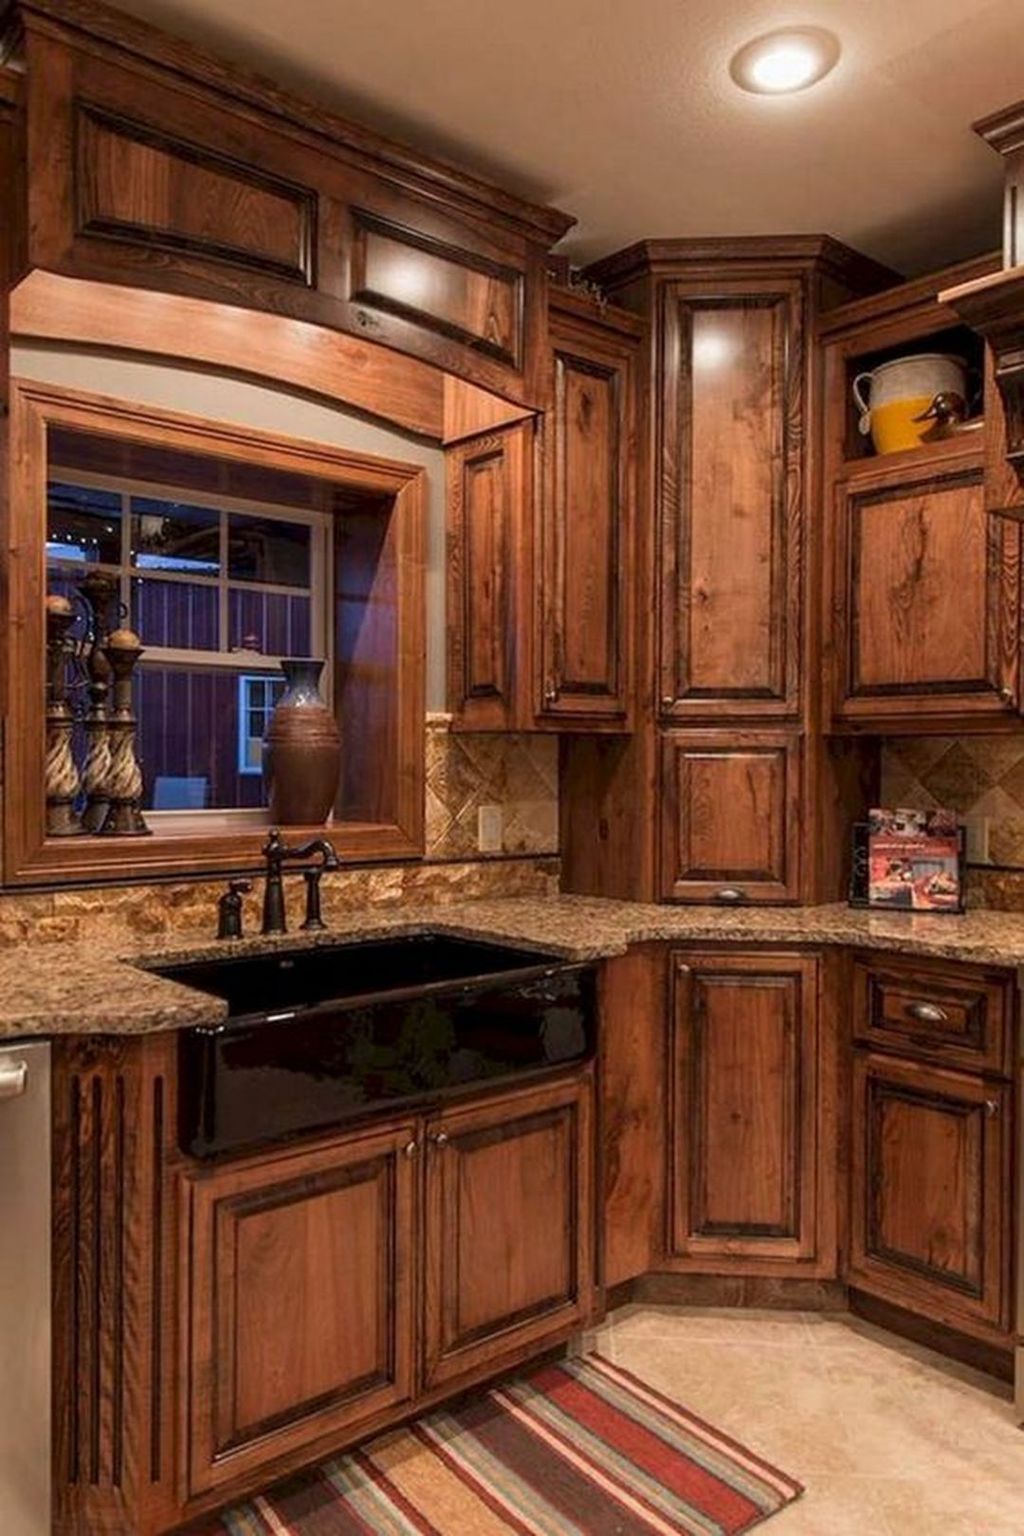  kitchen cabinet types